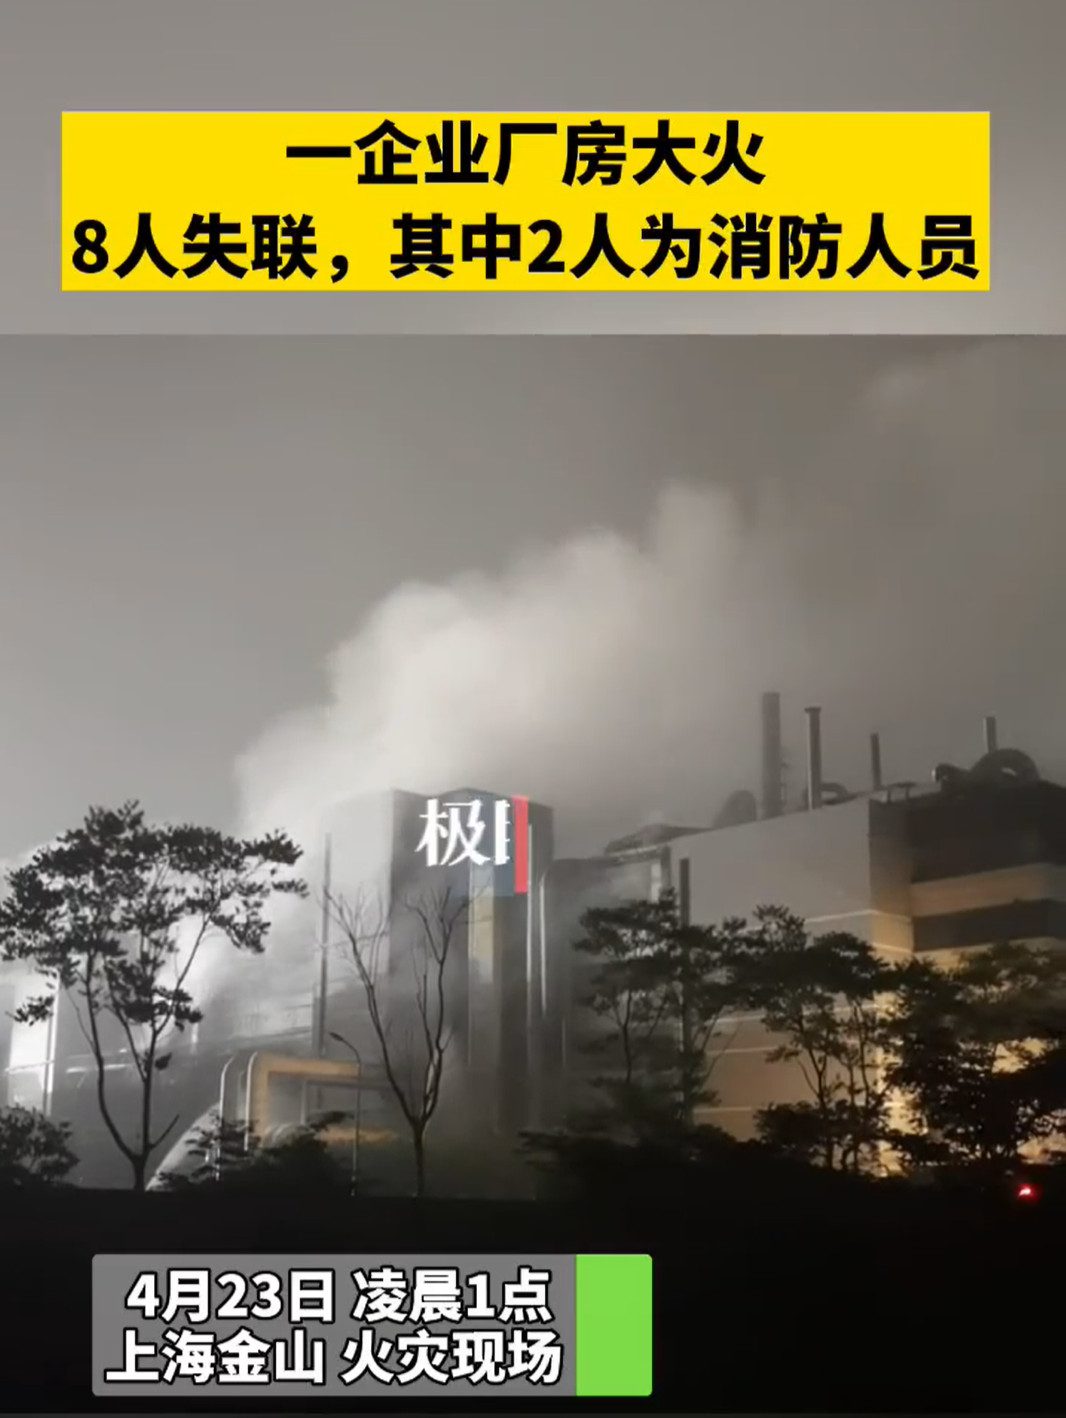 上海厂房大火致8人失联其中2人为消防人员